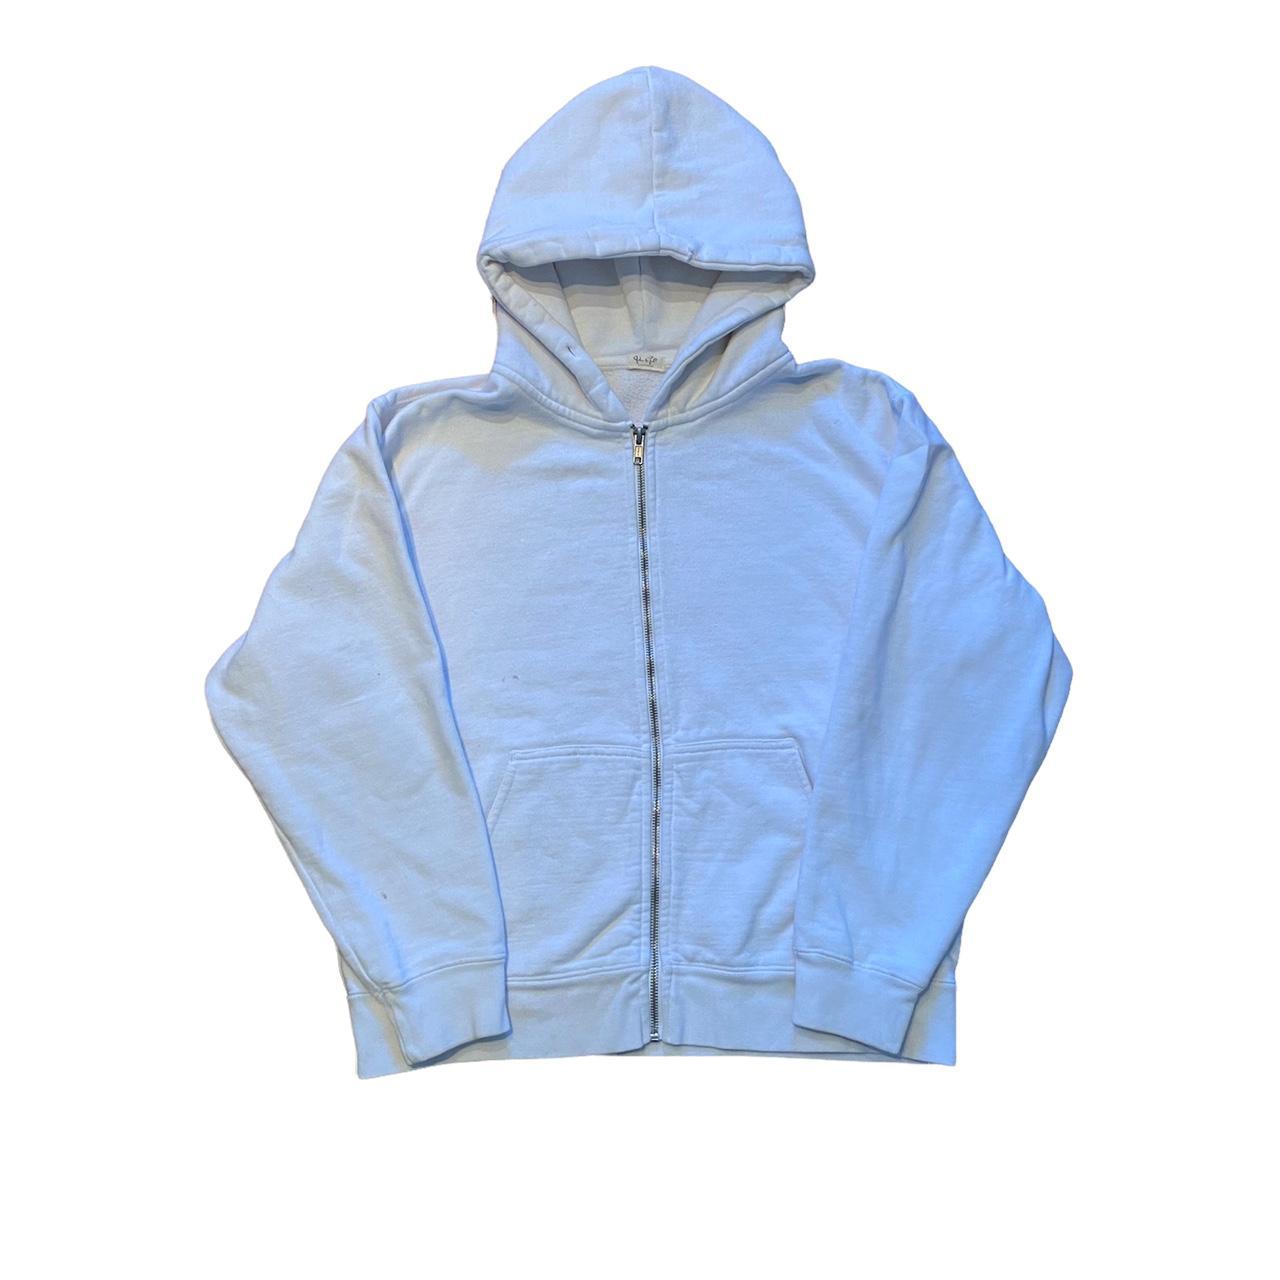 BRANDY MELVILLE CARLA hoodie periwinkle £11.50 - PicClick UK